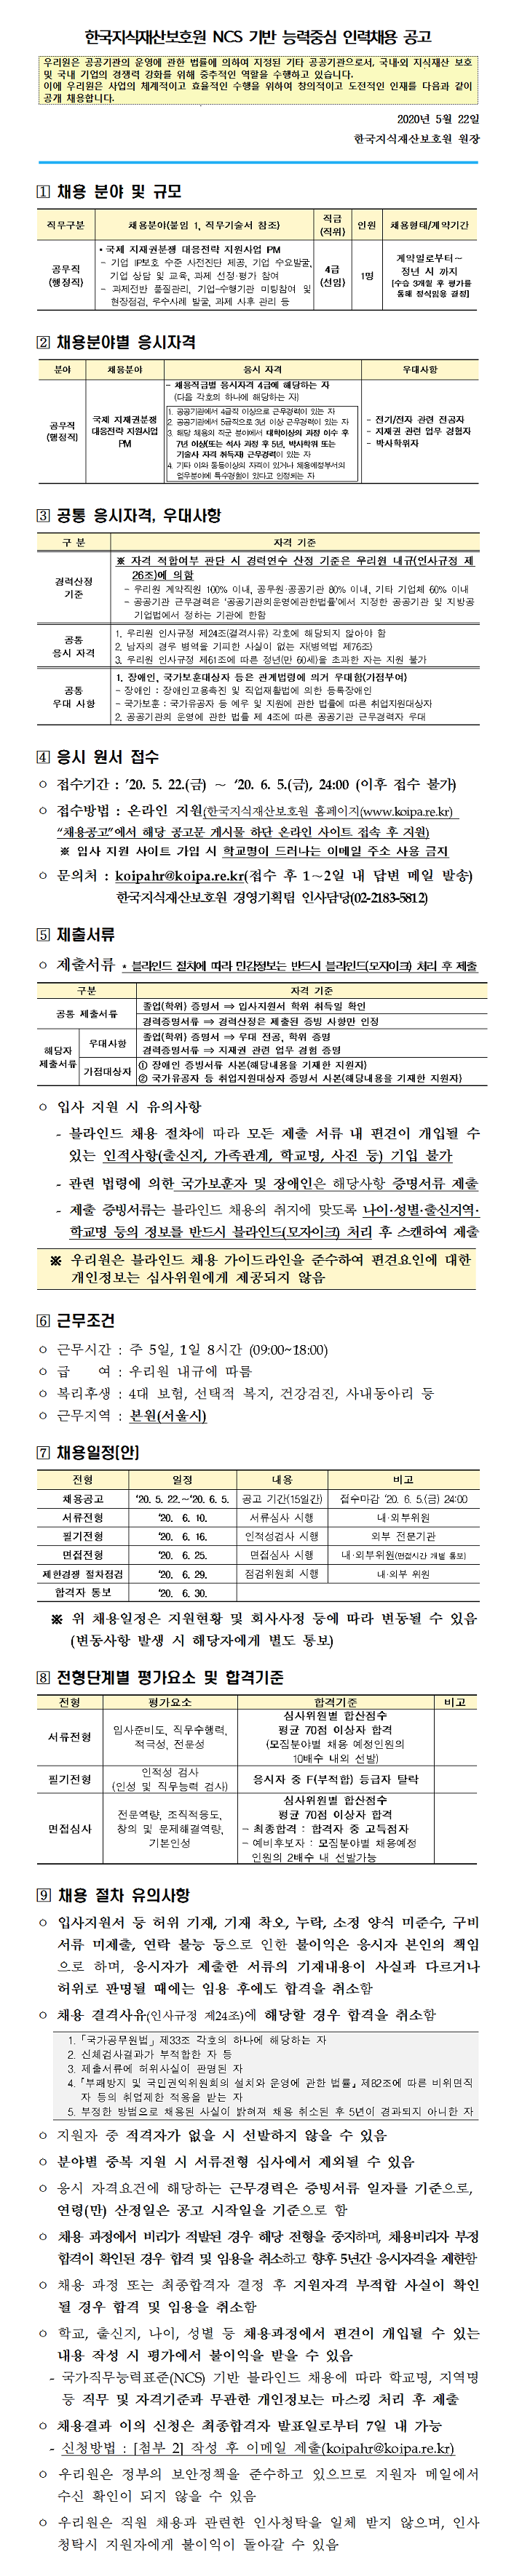 [채용][한국지식재산보호원] [채용공고_2020년 제9차] NCS 기반 능력중심 인력채용 공고